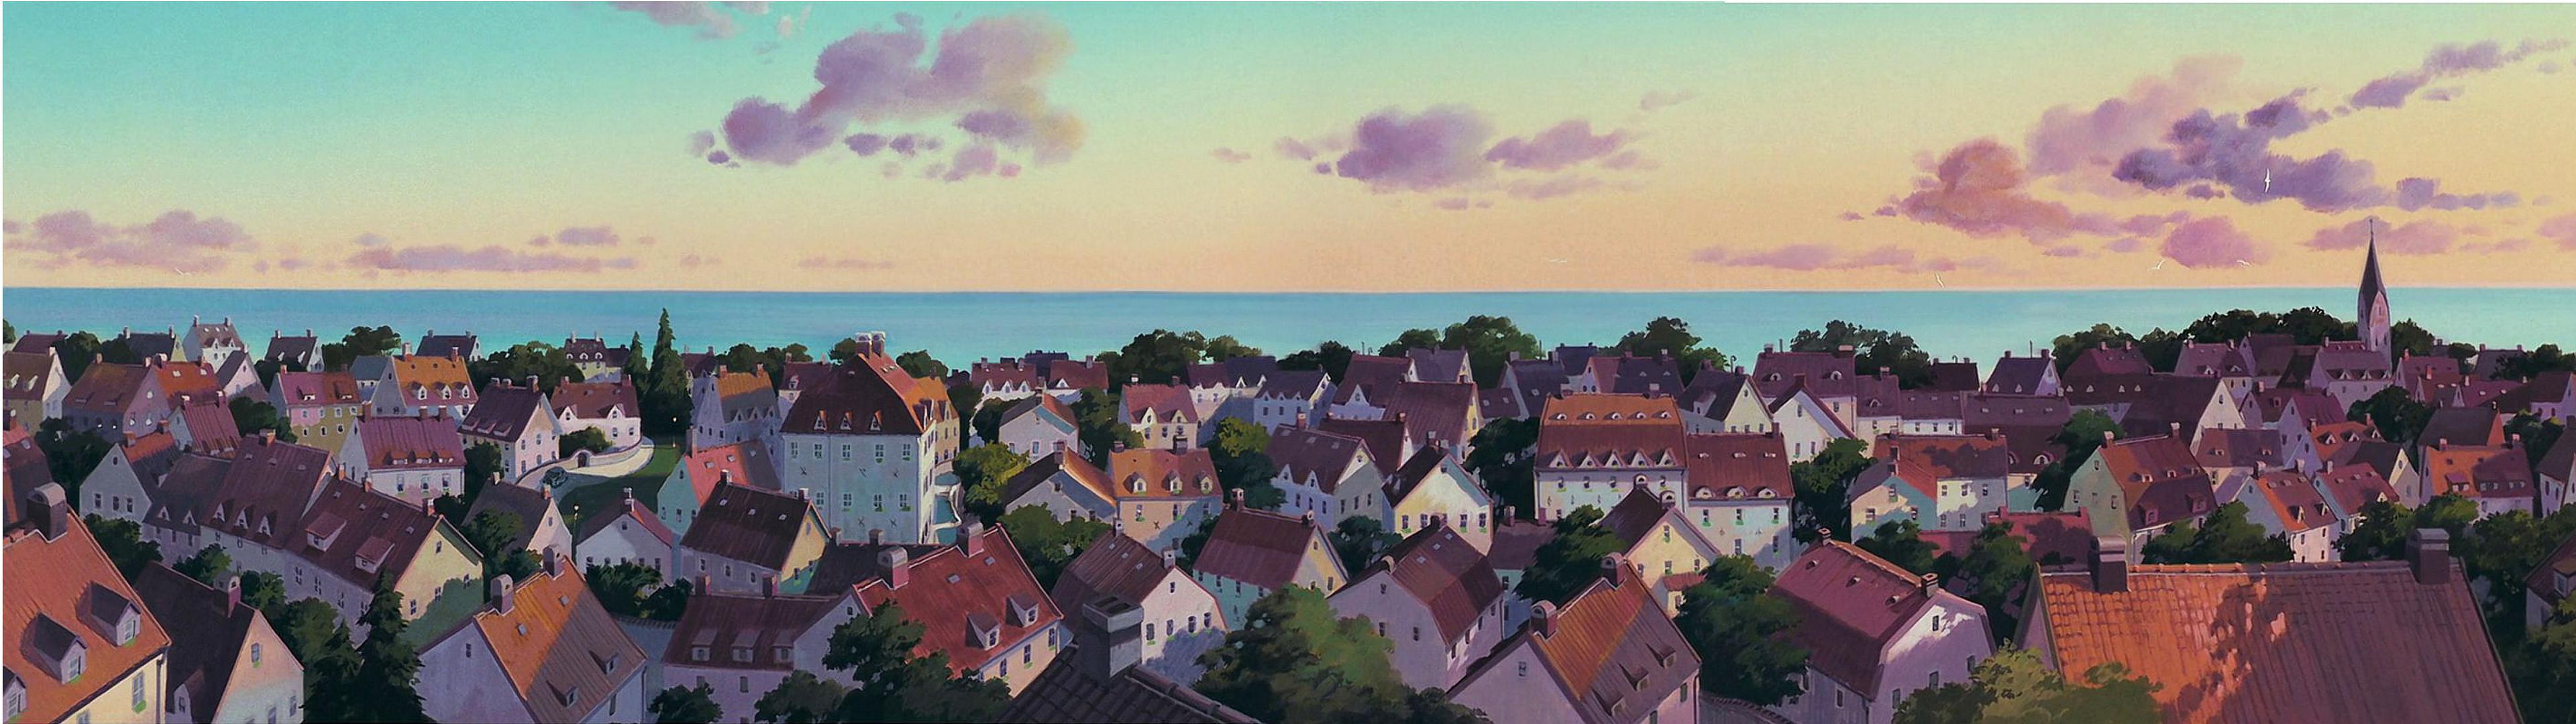 High res 'dual screen' Studio Ghibli desktop wallpaper!